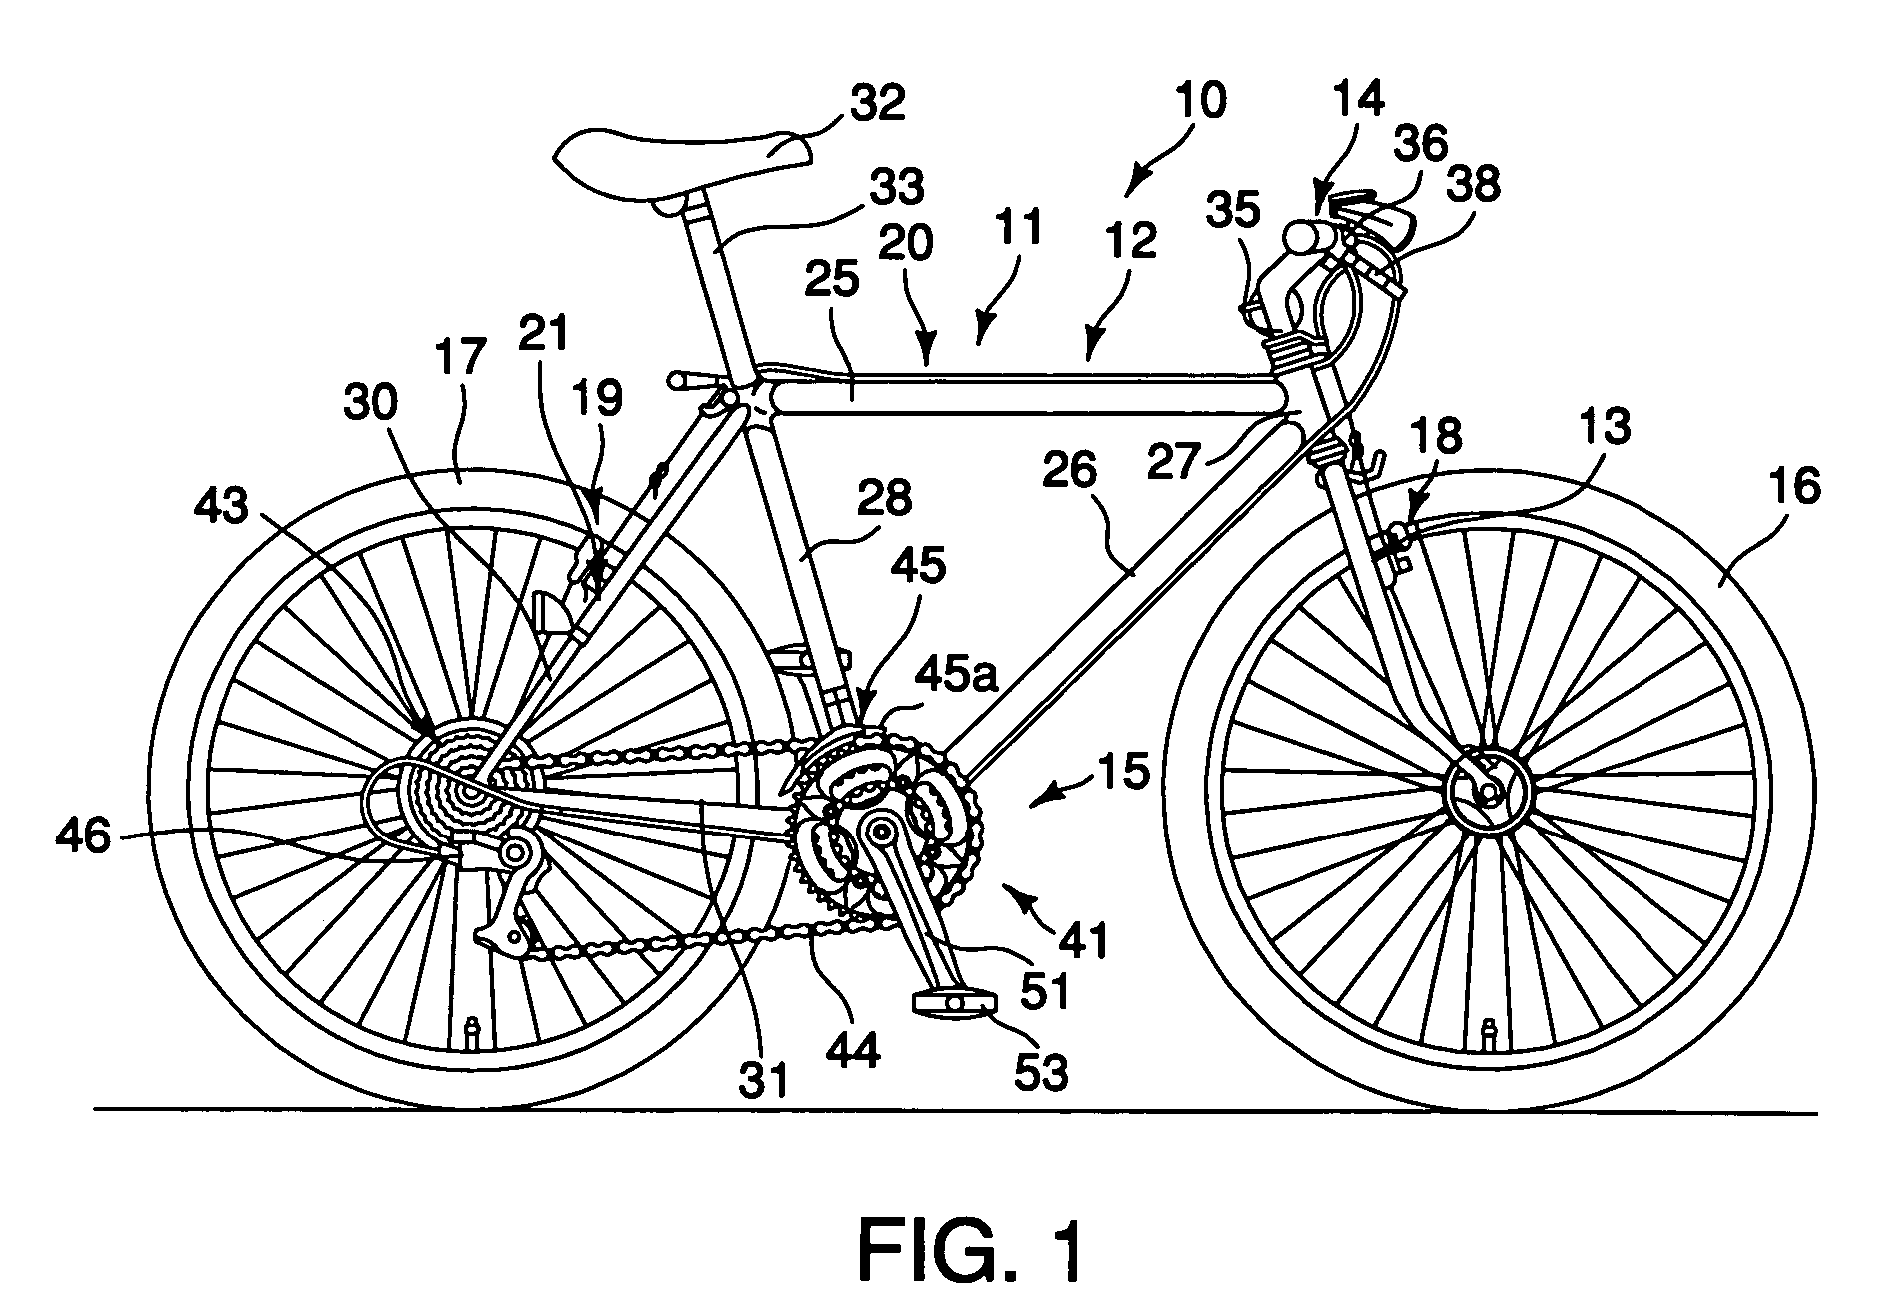 Bicycle sprocket